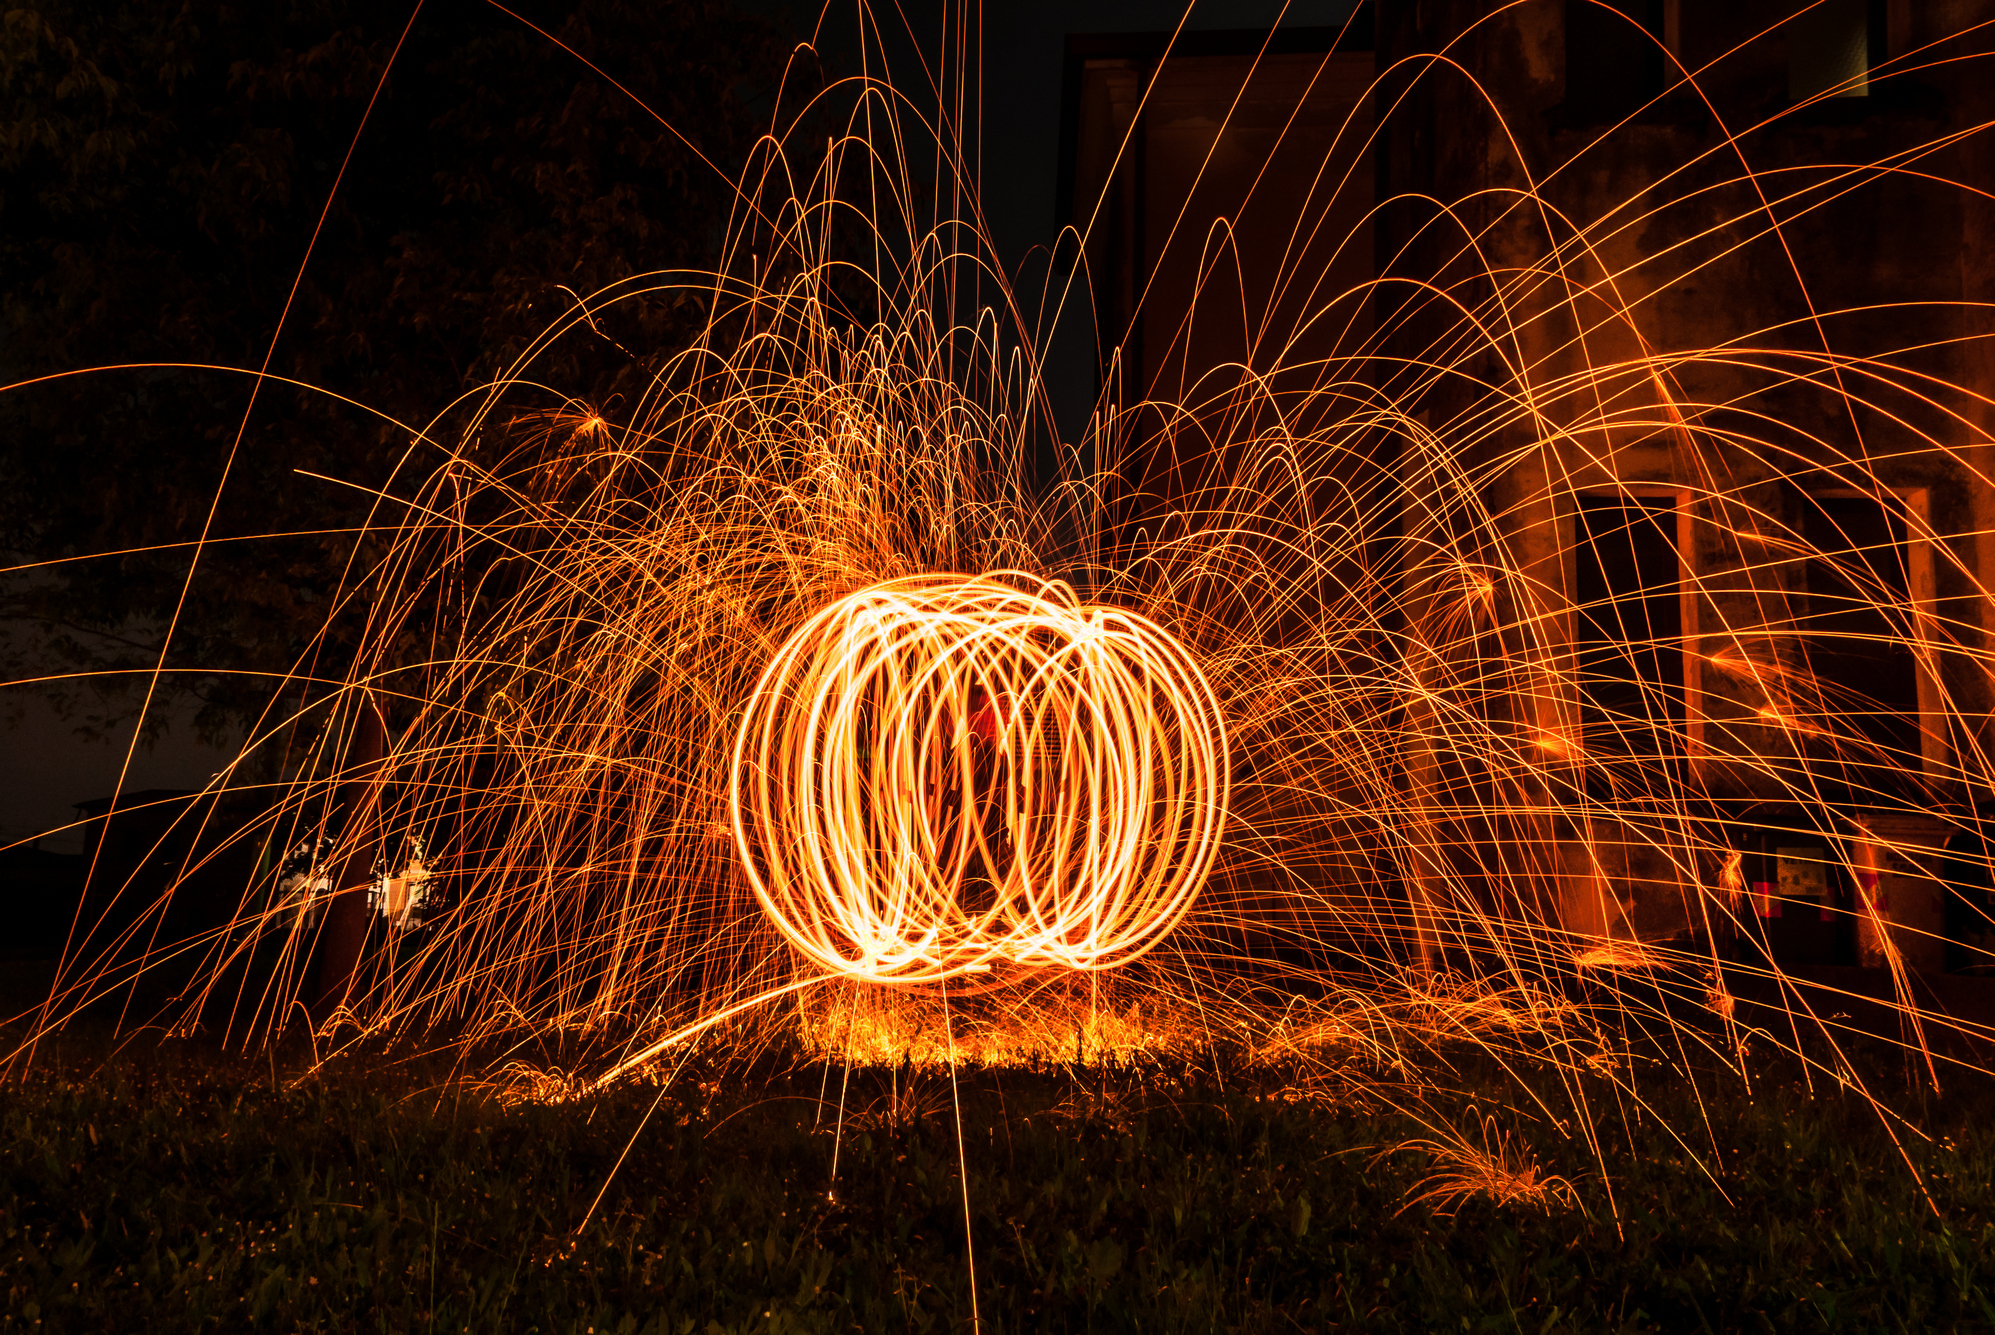 Steel Wool Fire (foto by Mario Jr Nicorelli)